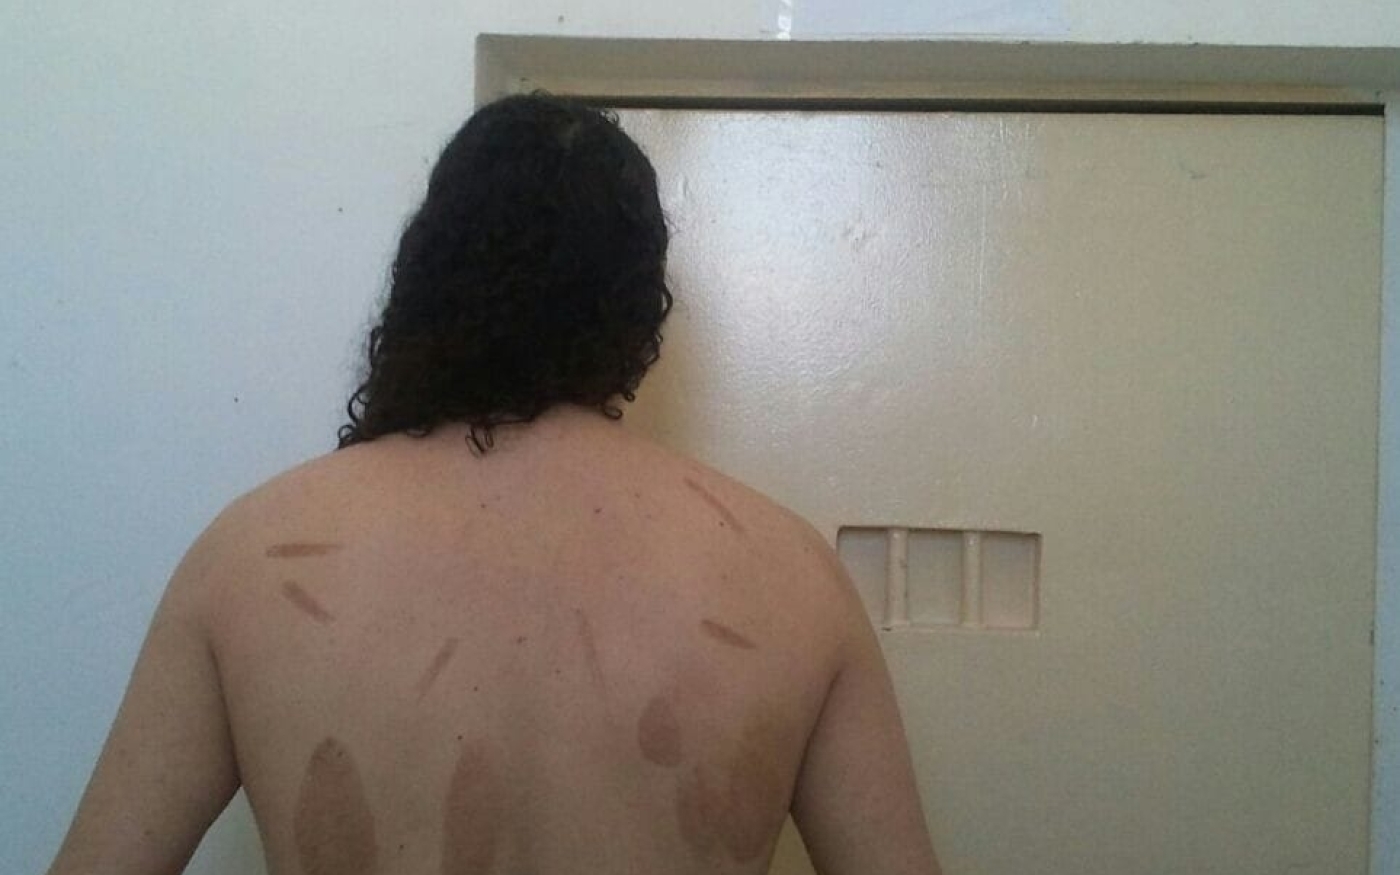 En prison au Maroc, Mohamed Hajib a été torturé, comme le montre cette photo, avec des objets qui lui ont laissé des traces de brûlures dans le dos (avec l’aimable autorisation de Mohamed Hajib)